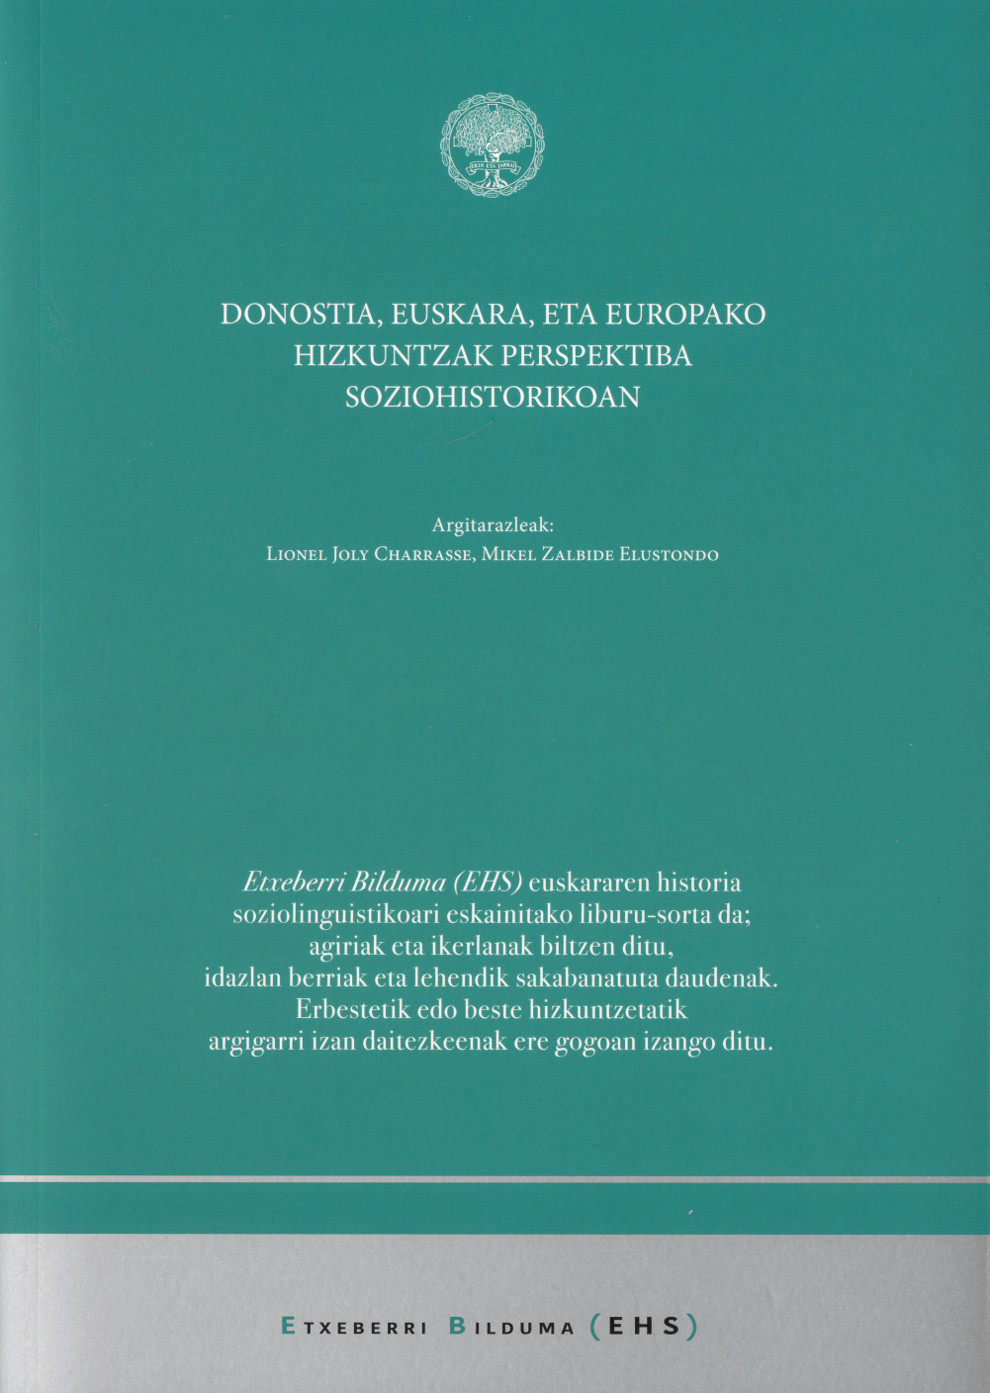 Imagen de portada del libro Donostia, euskara eta Europako hizkuntzak perspektiba soziohistorikoan